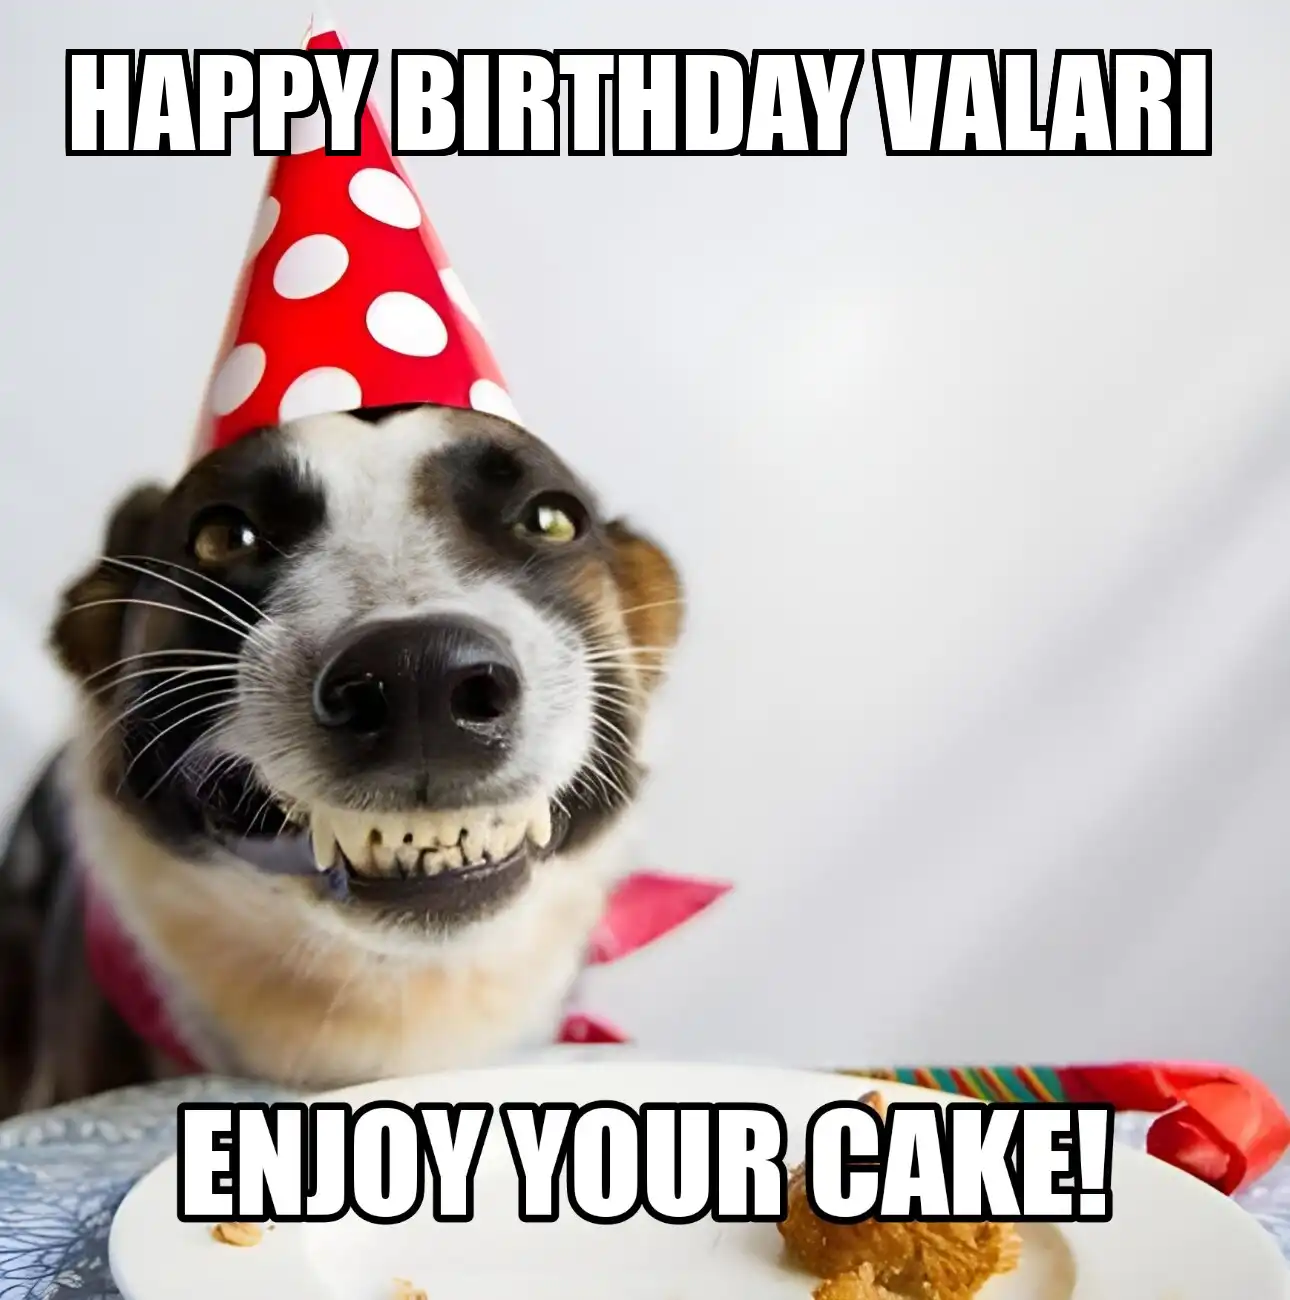 Happy Birthday Valari Enjoy Your Cake Dog Meme